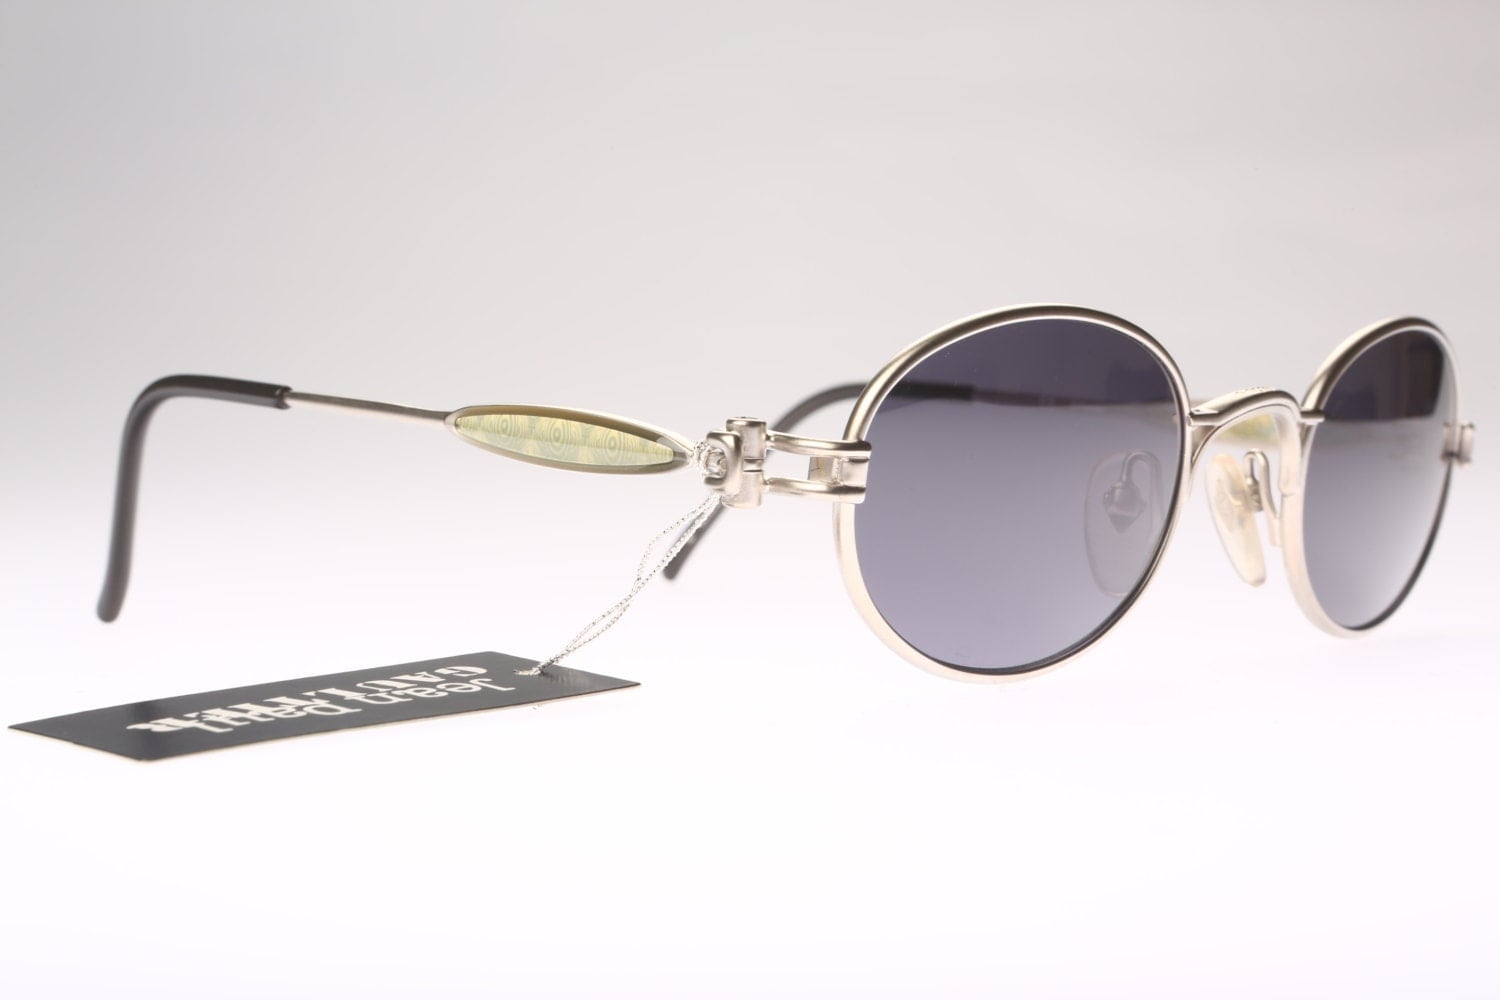 Jean Paul Gaultier 56-7113 / 90s Vintage sunglasses / NOS / Remarkable ...